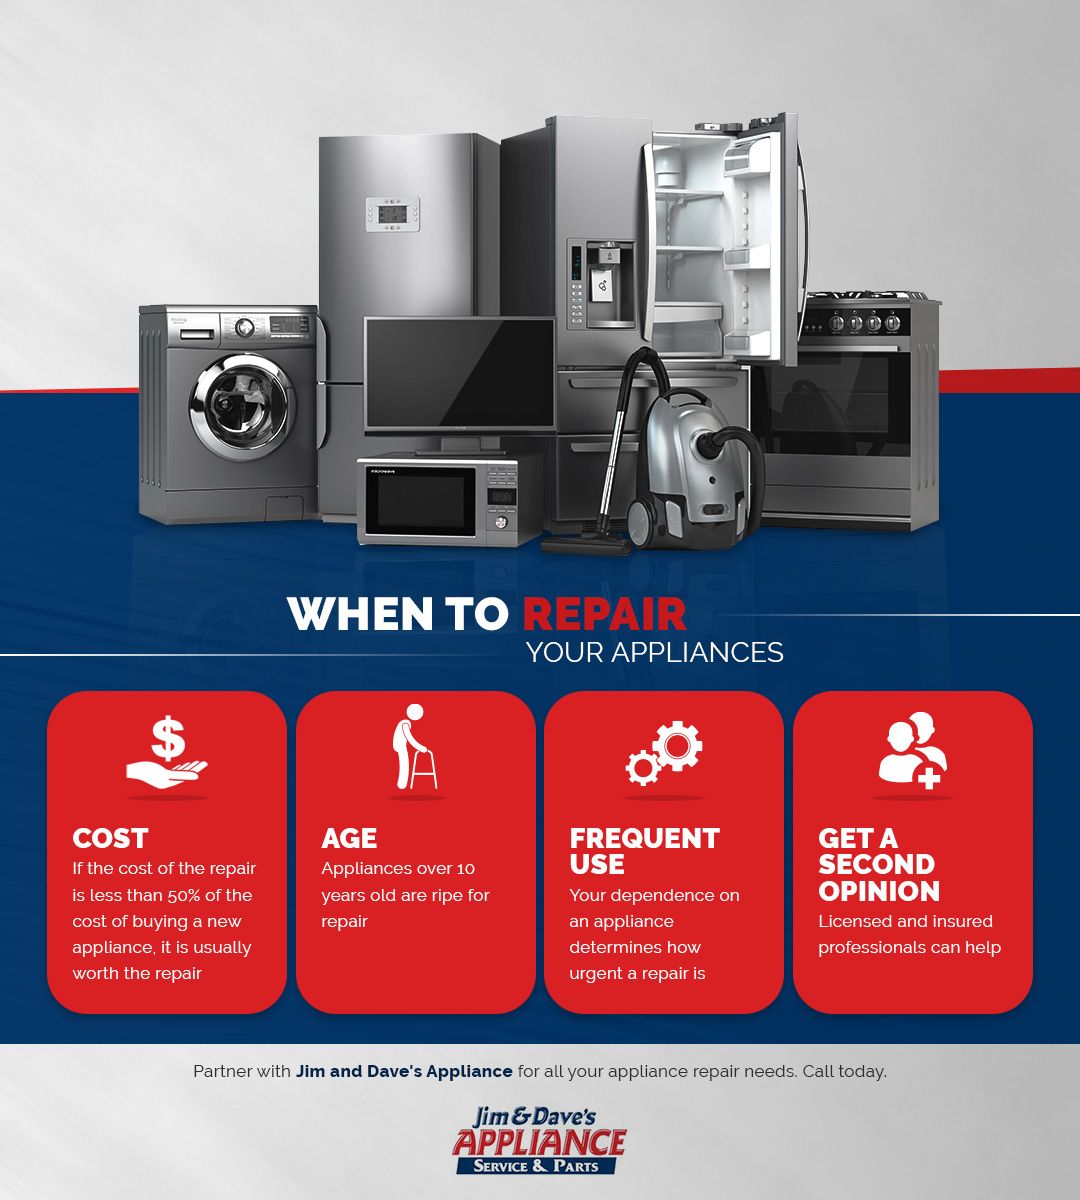 When-to-Repair-Your-Appliances-62b49ed120754.jpg